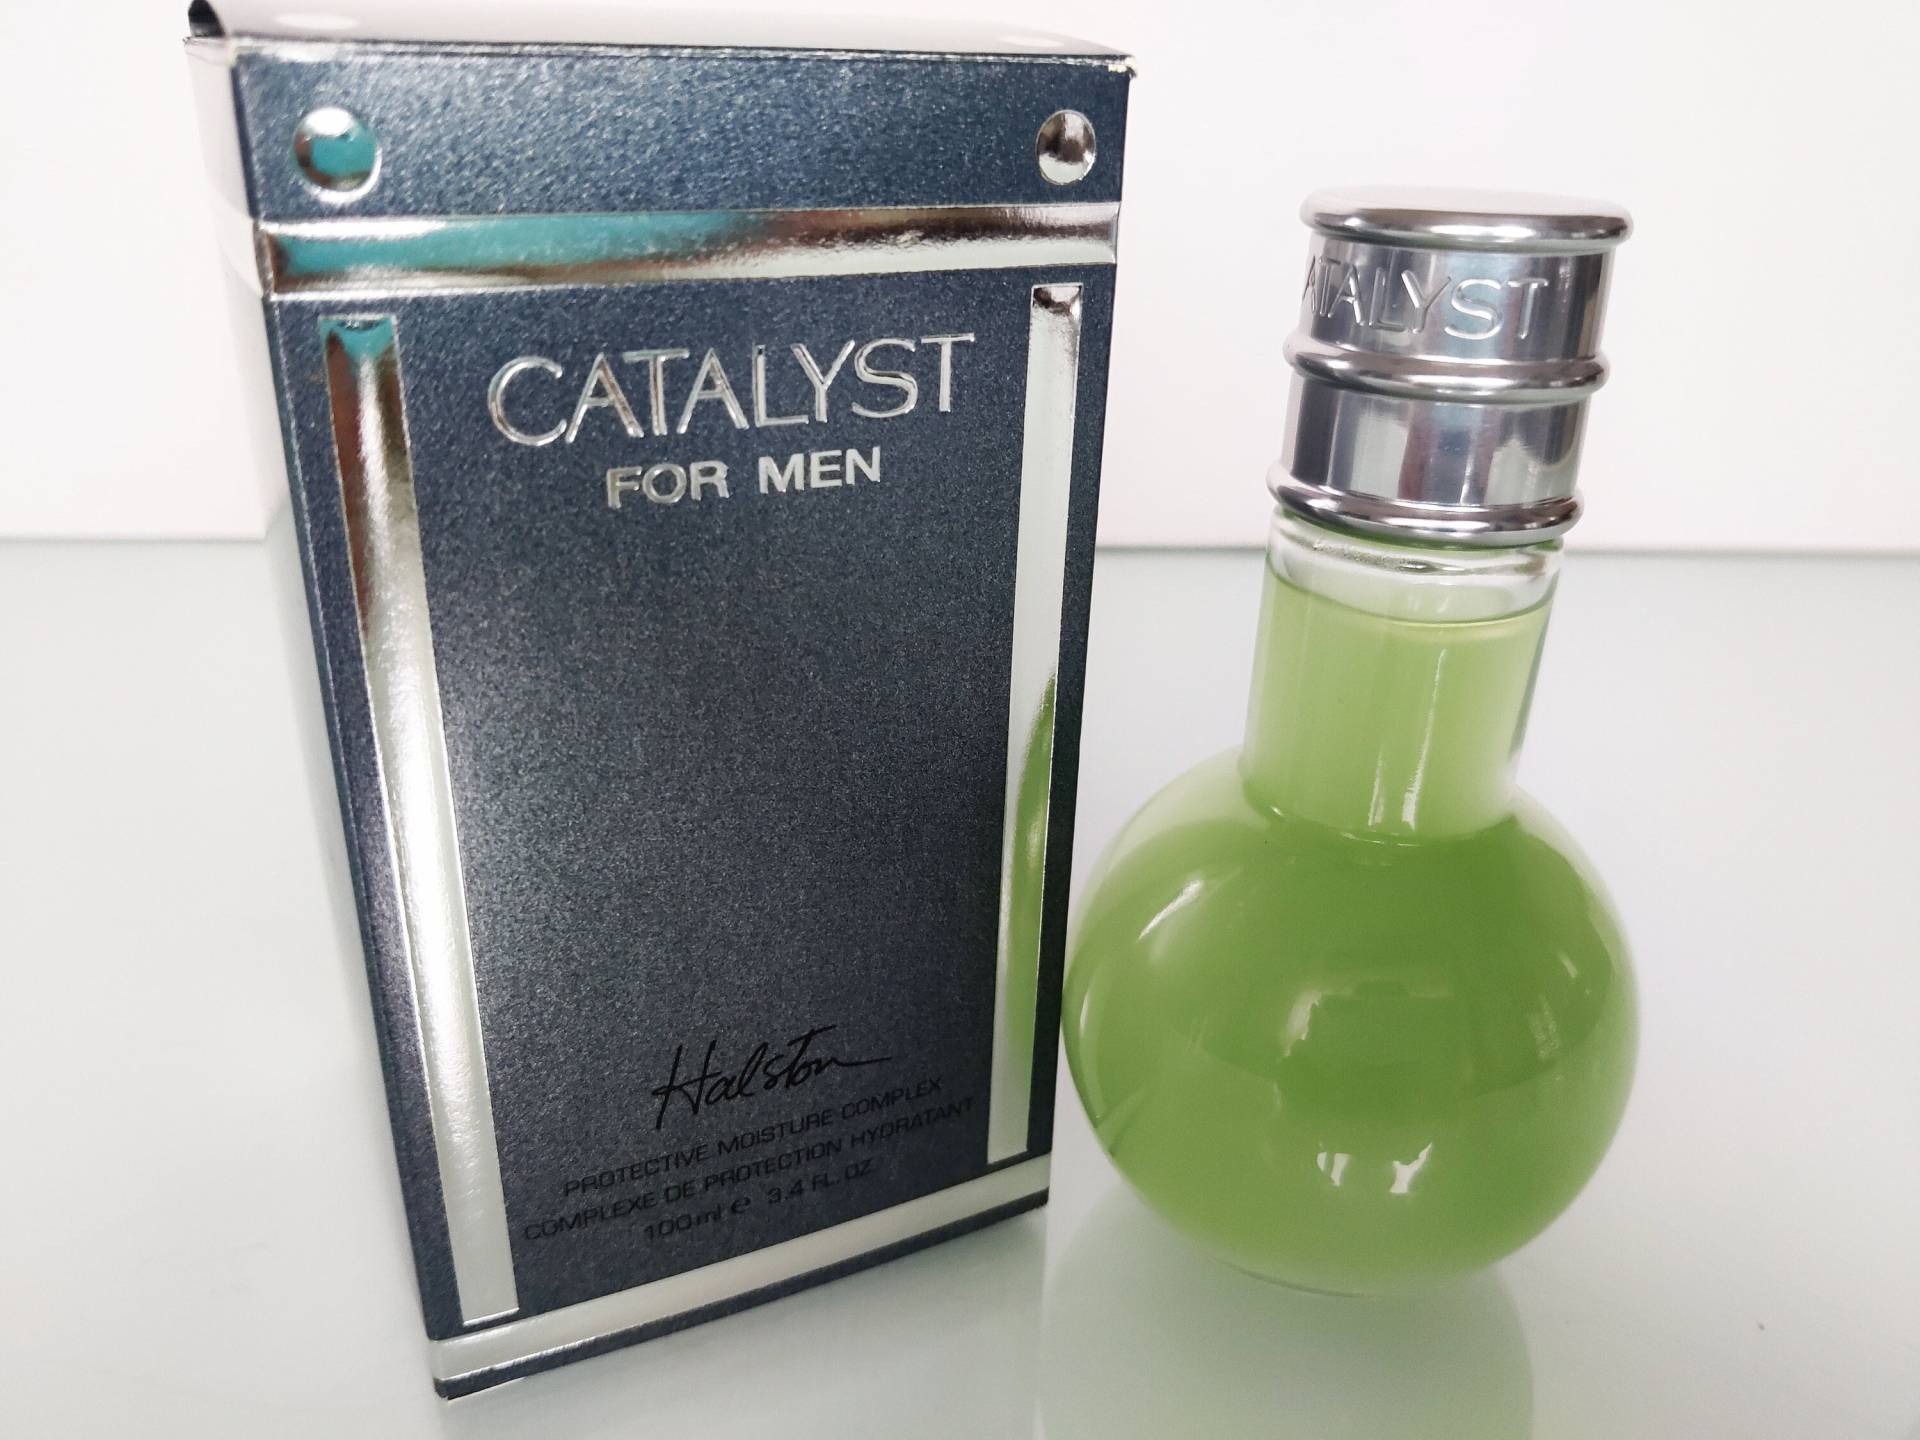 Halston "Catalyst" For Men Protective Moisture Vintage Catalyst 100 Ml/3, 4 Oz.fl. Brandneu von MyVintageGadgets